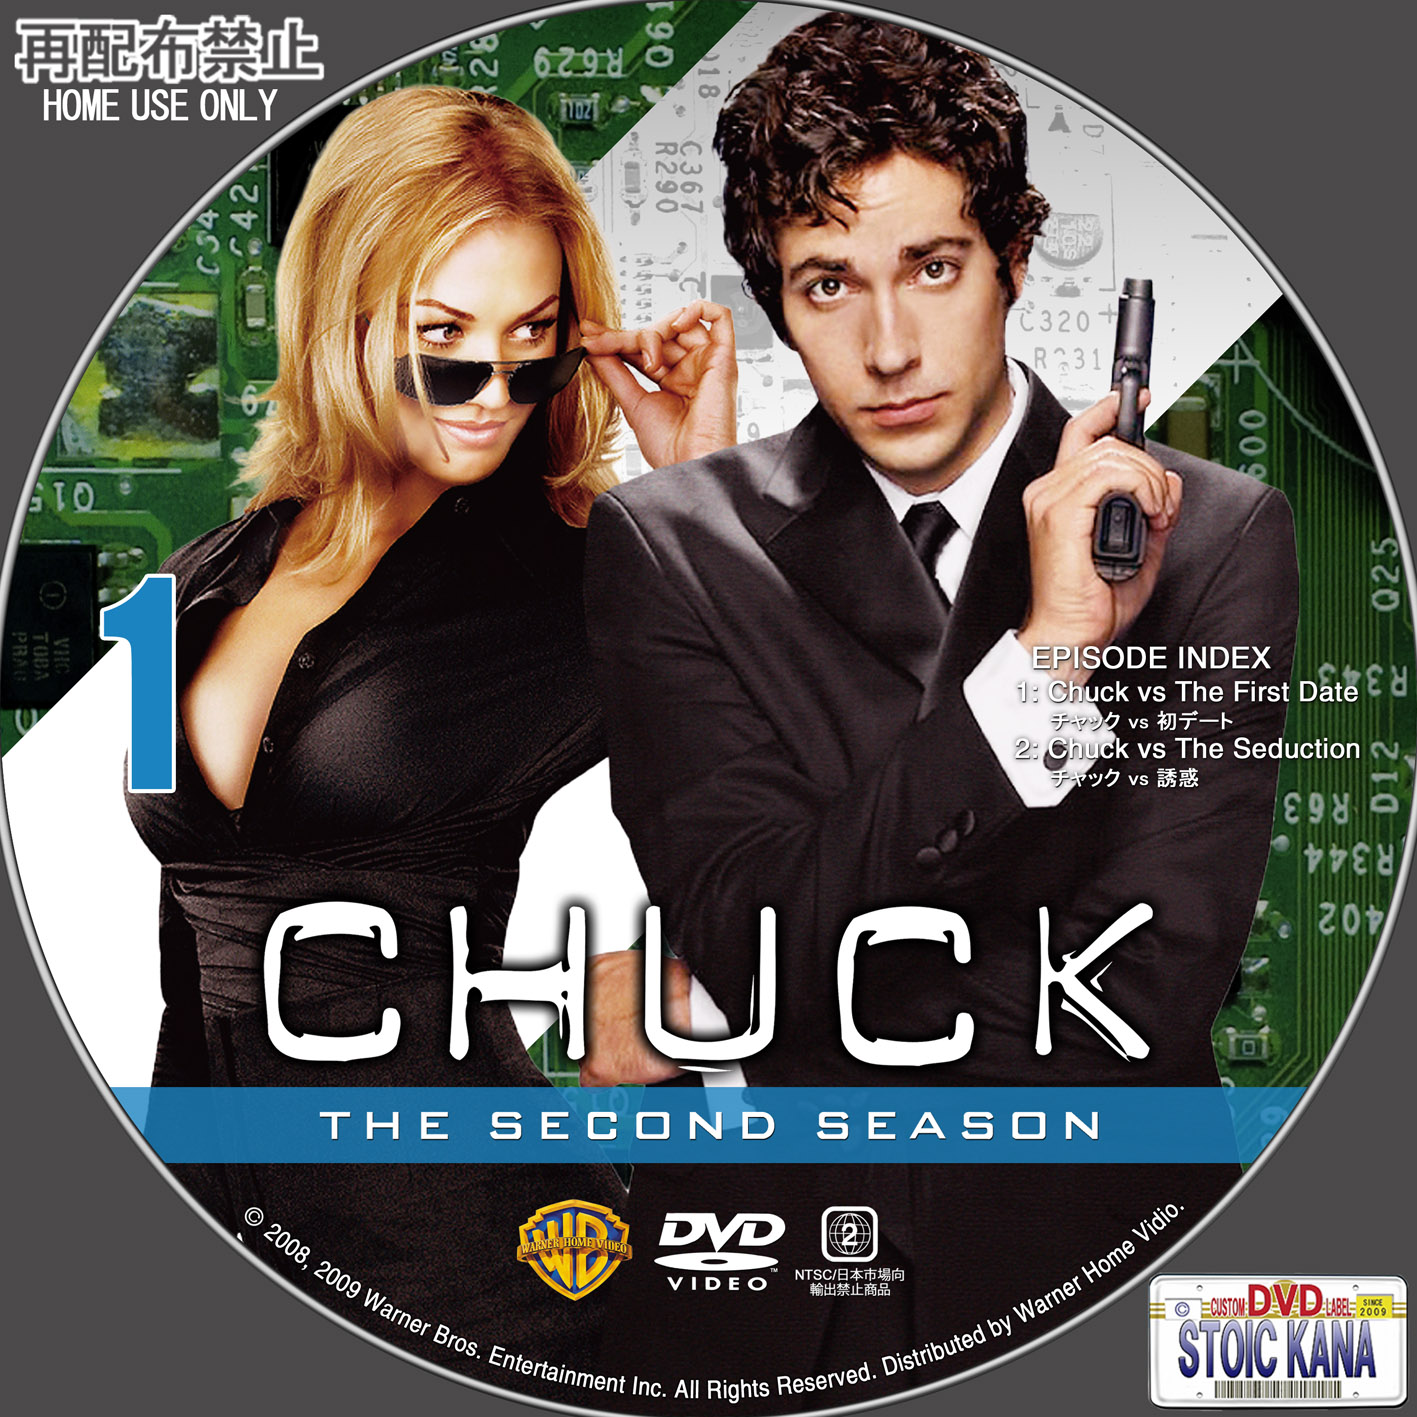 ビッグ CHUCK/チャック DVD全巻セット(45枚組) - PCサプライ、アクセサリー